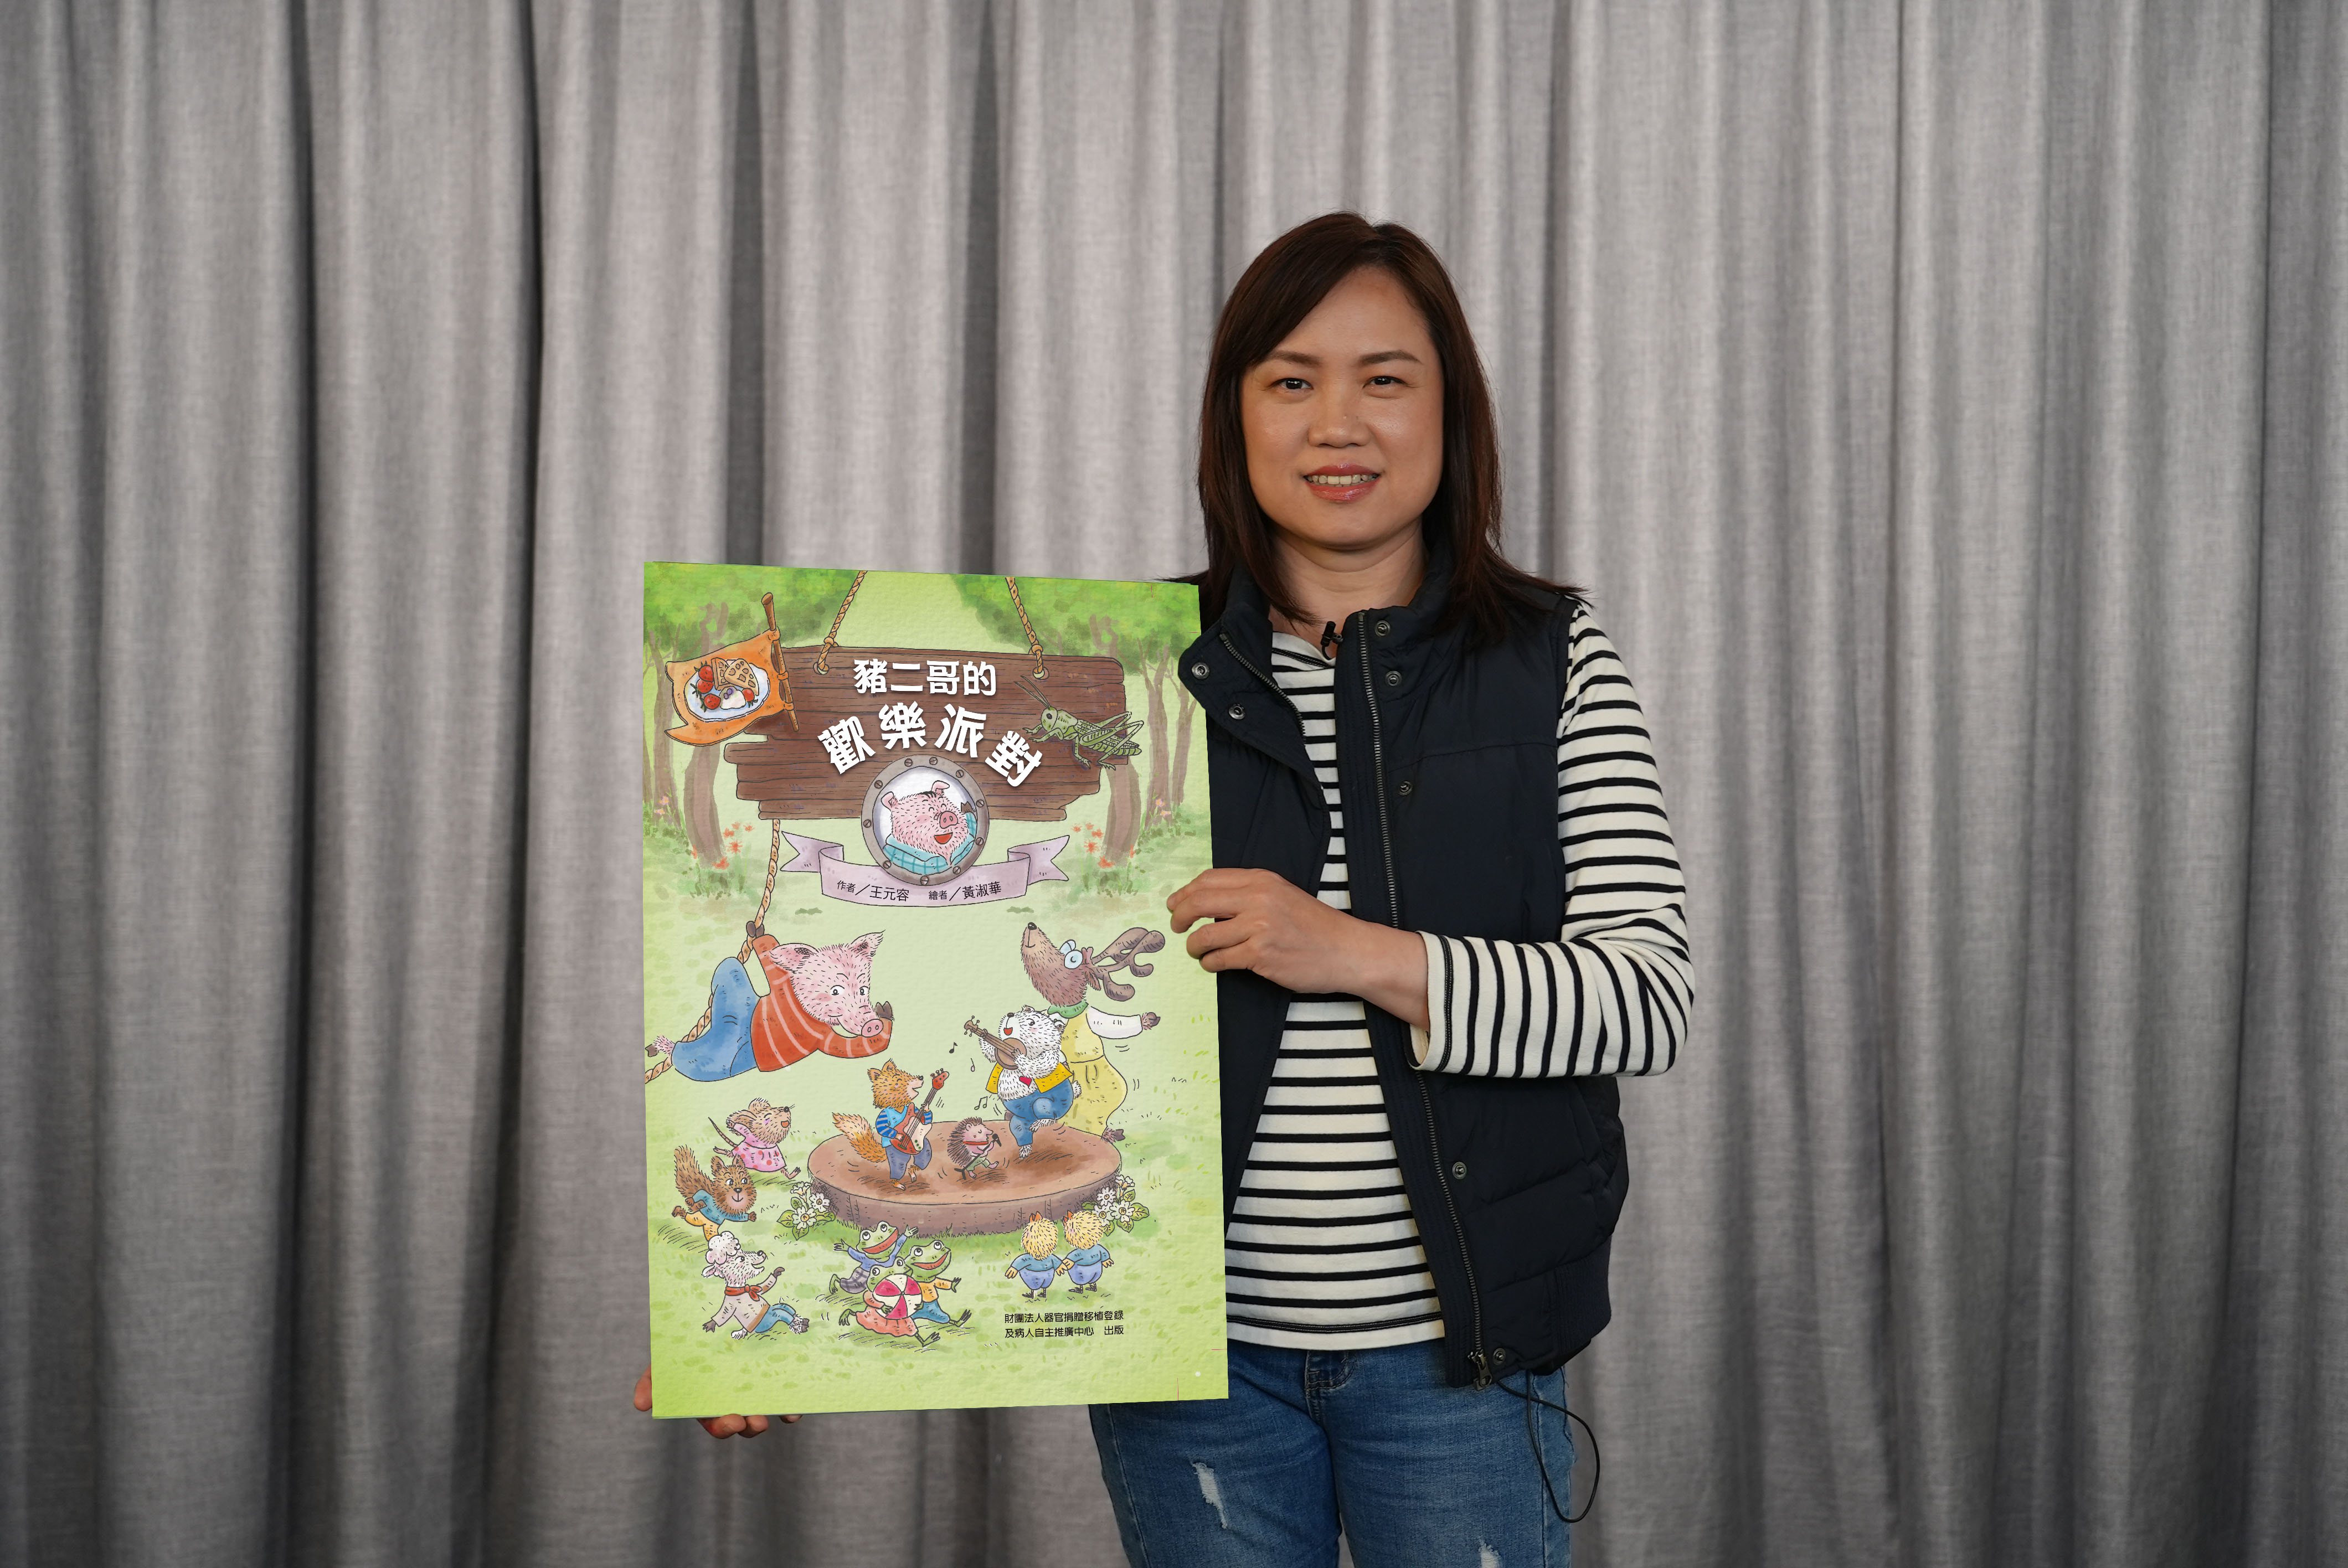 基隆長樂國小老師「神老師」沈雅琪對繪本《豬二哥的歡樂派對》格外有感。柯佩芳╱攝影